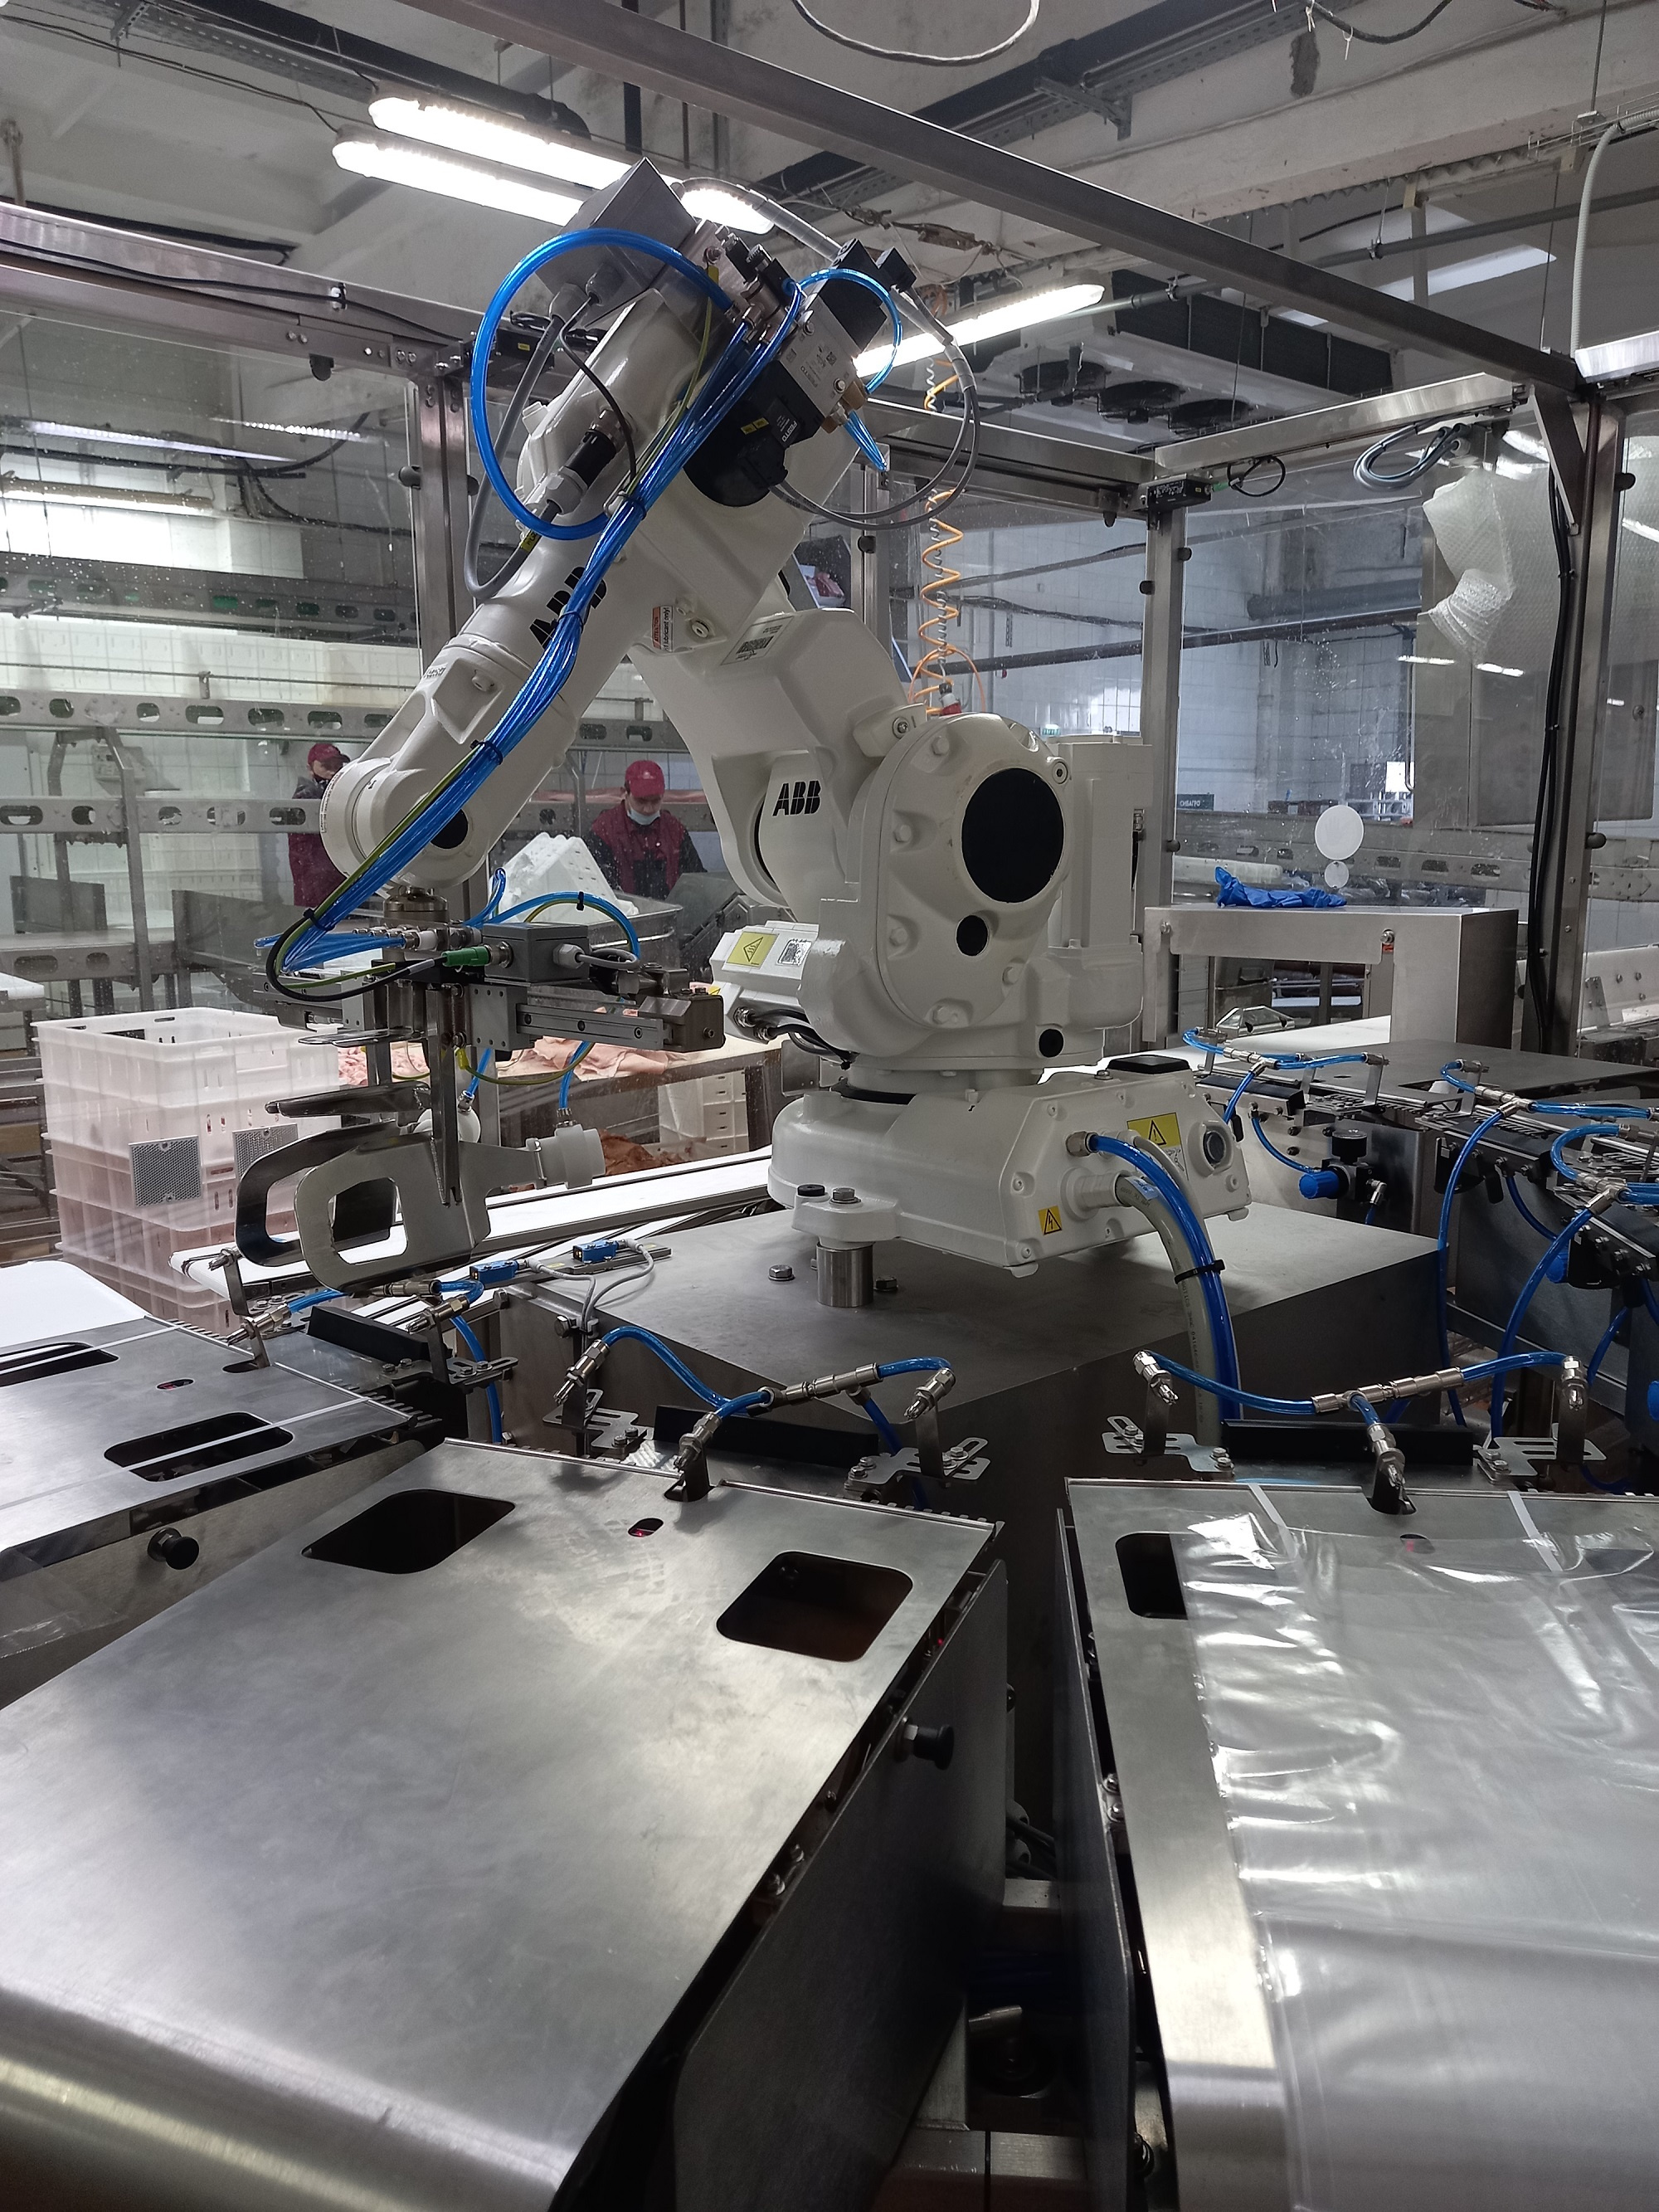 Робот упаковывает мясо без участия человека в стерильных условиях. Это позволило увеличить срок годности продукции до 14 дней